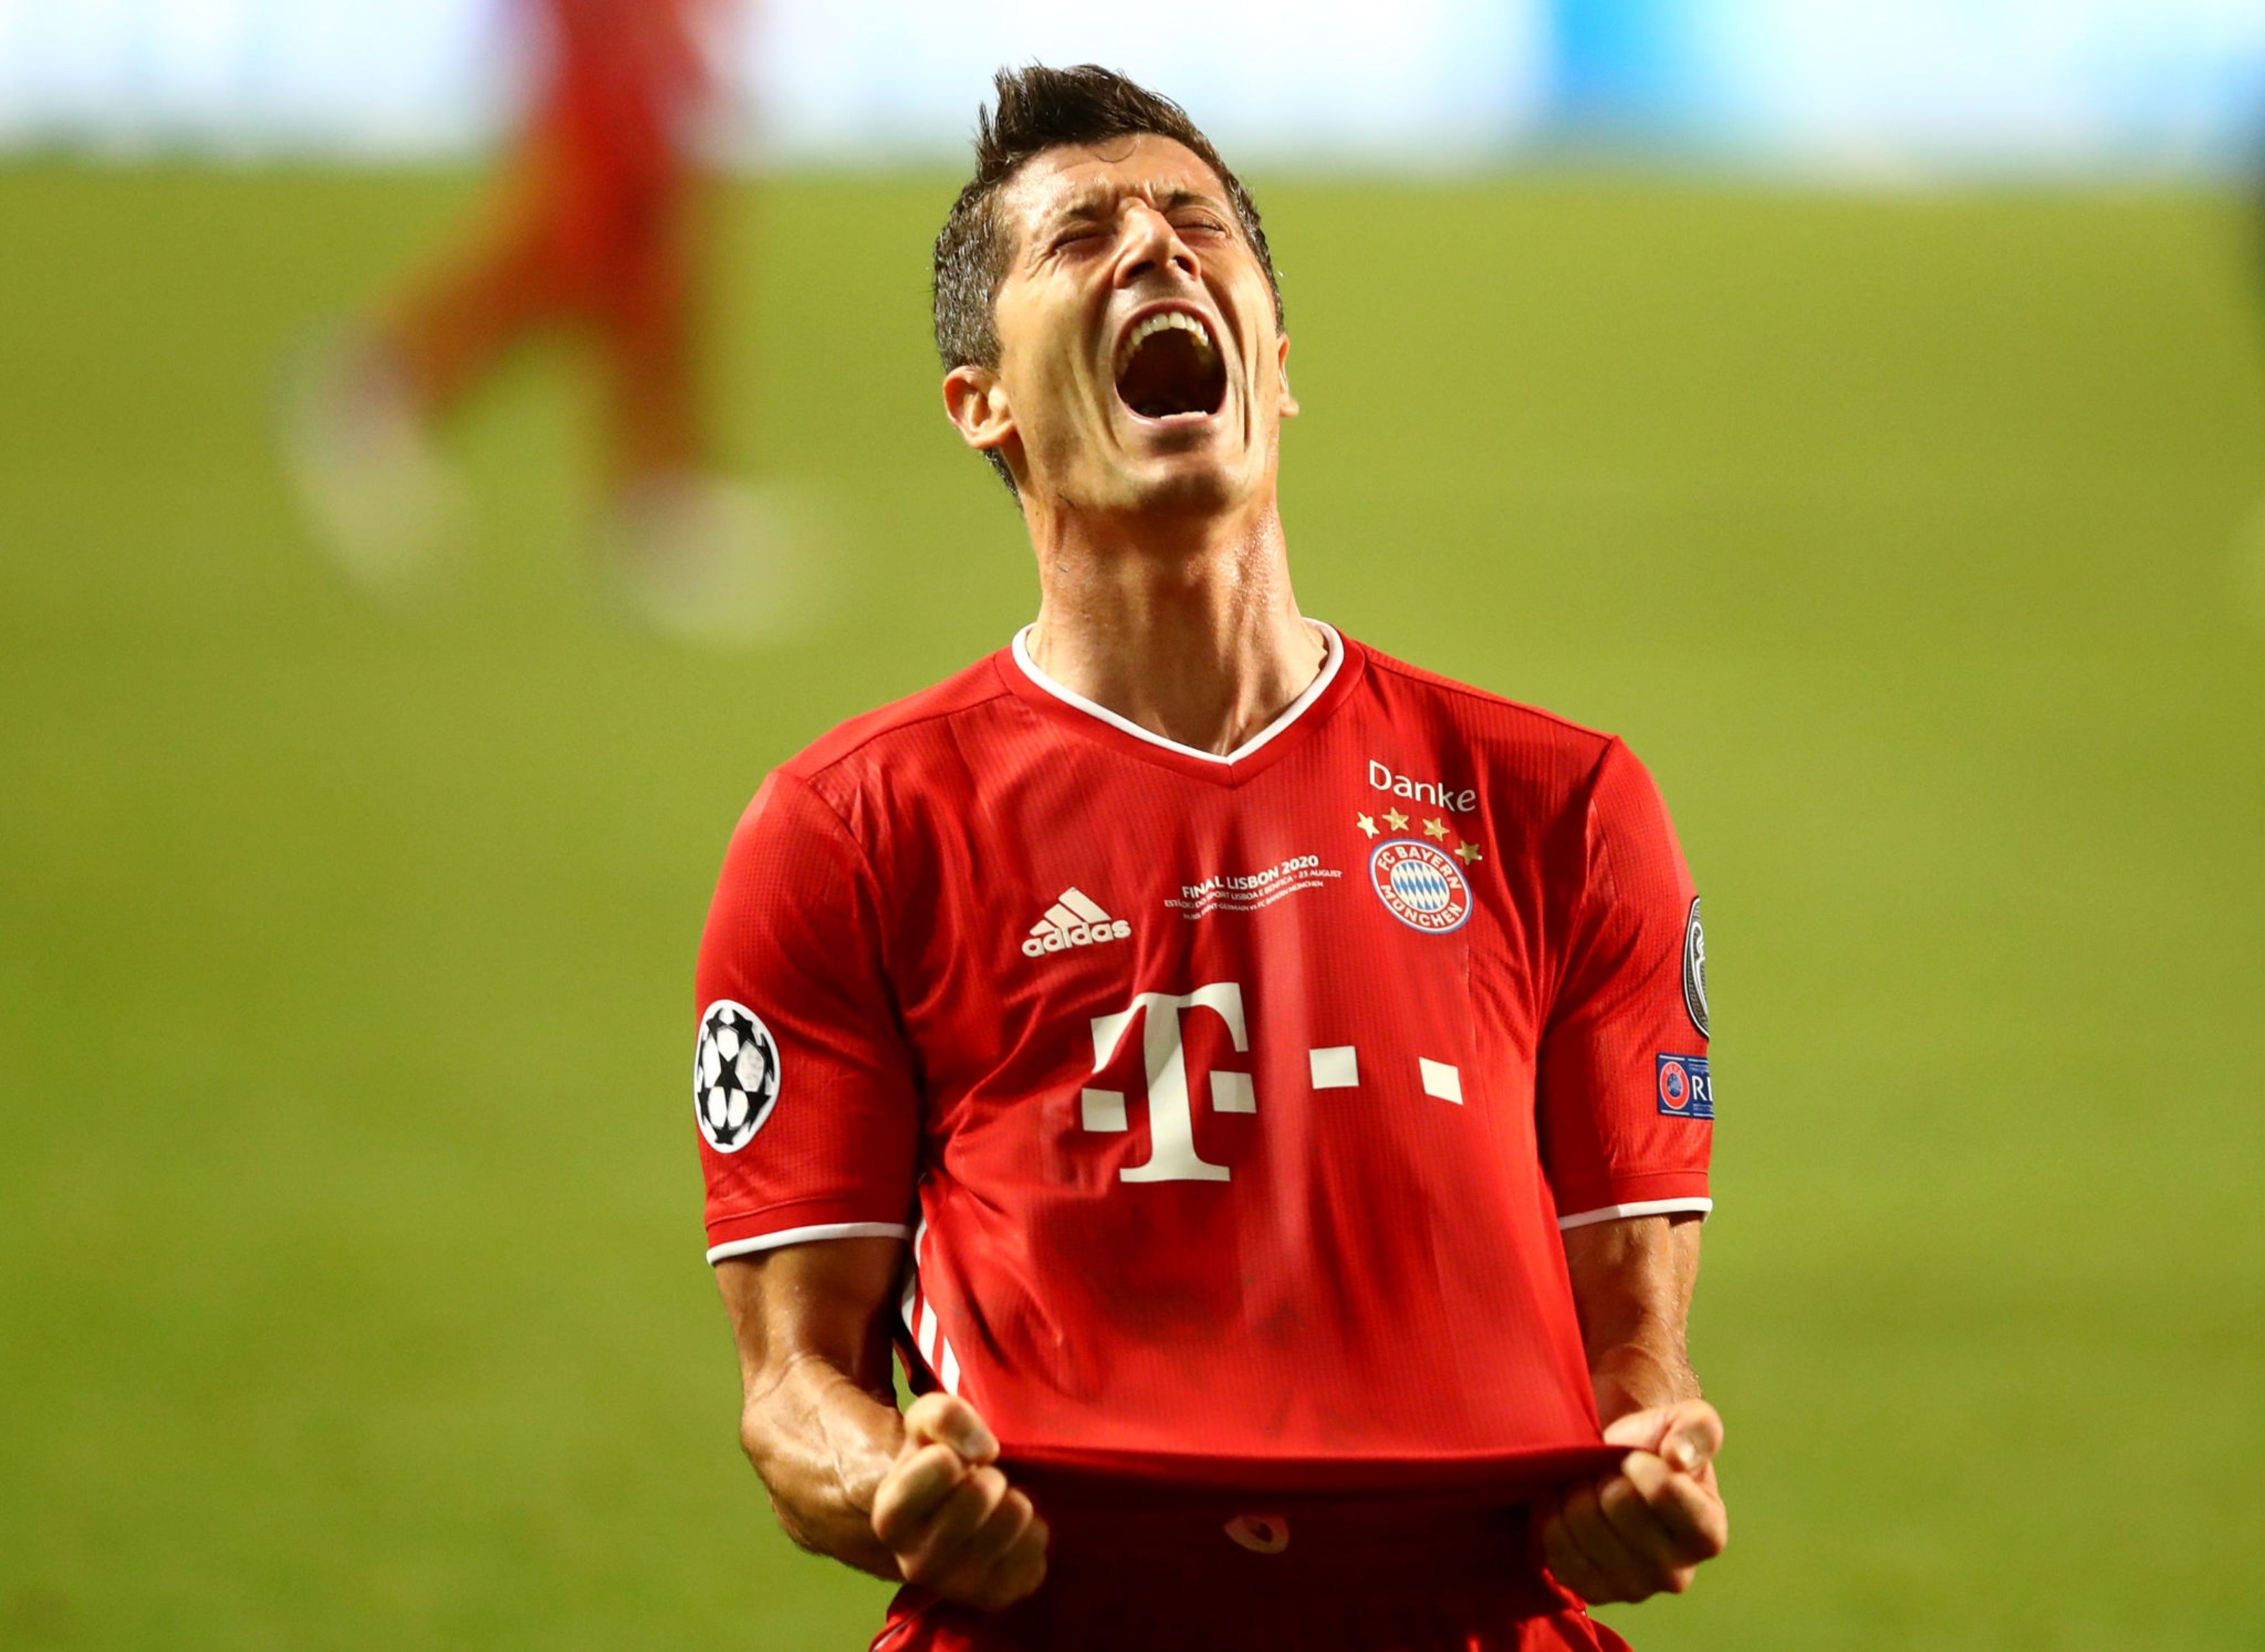 بایرن مونیخ - Bayern Munich - لیگ قهرمانان اروپا - UCL - فینال لیگ قهرمانان اروپا - بازی مقابل پاری سن ژرمن